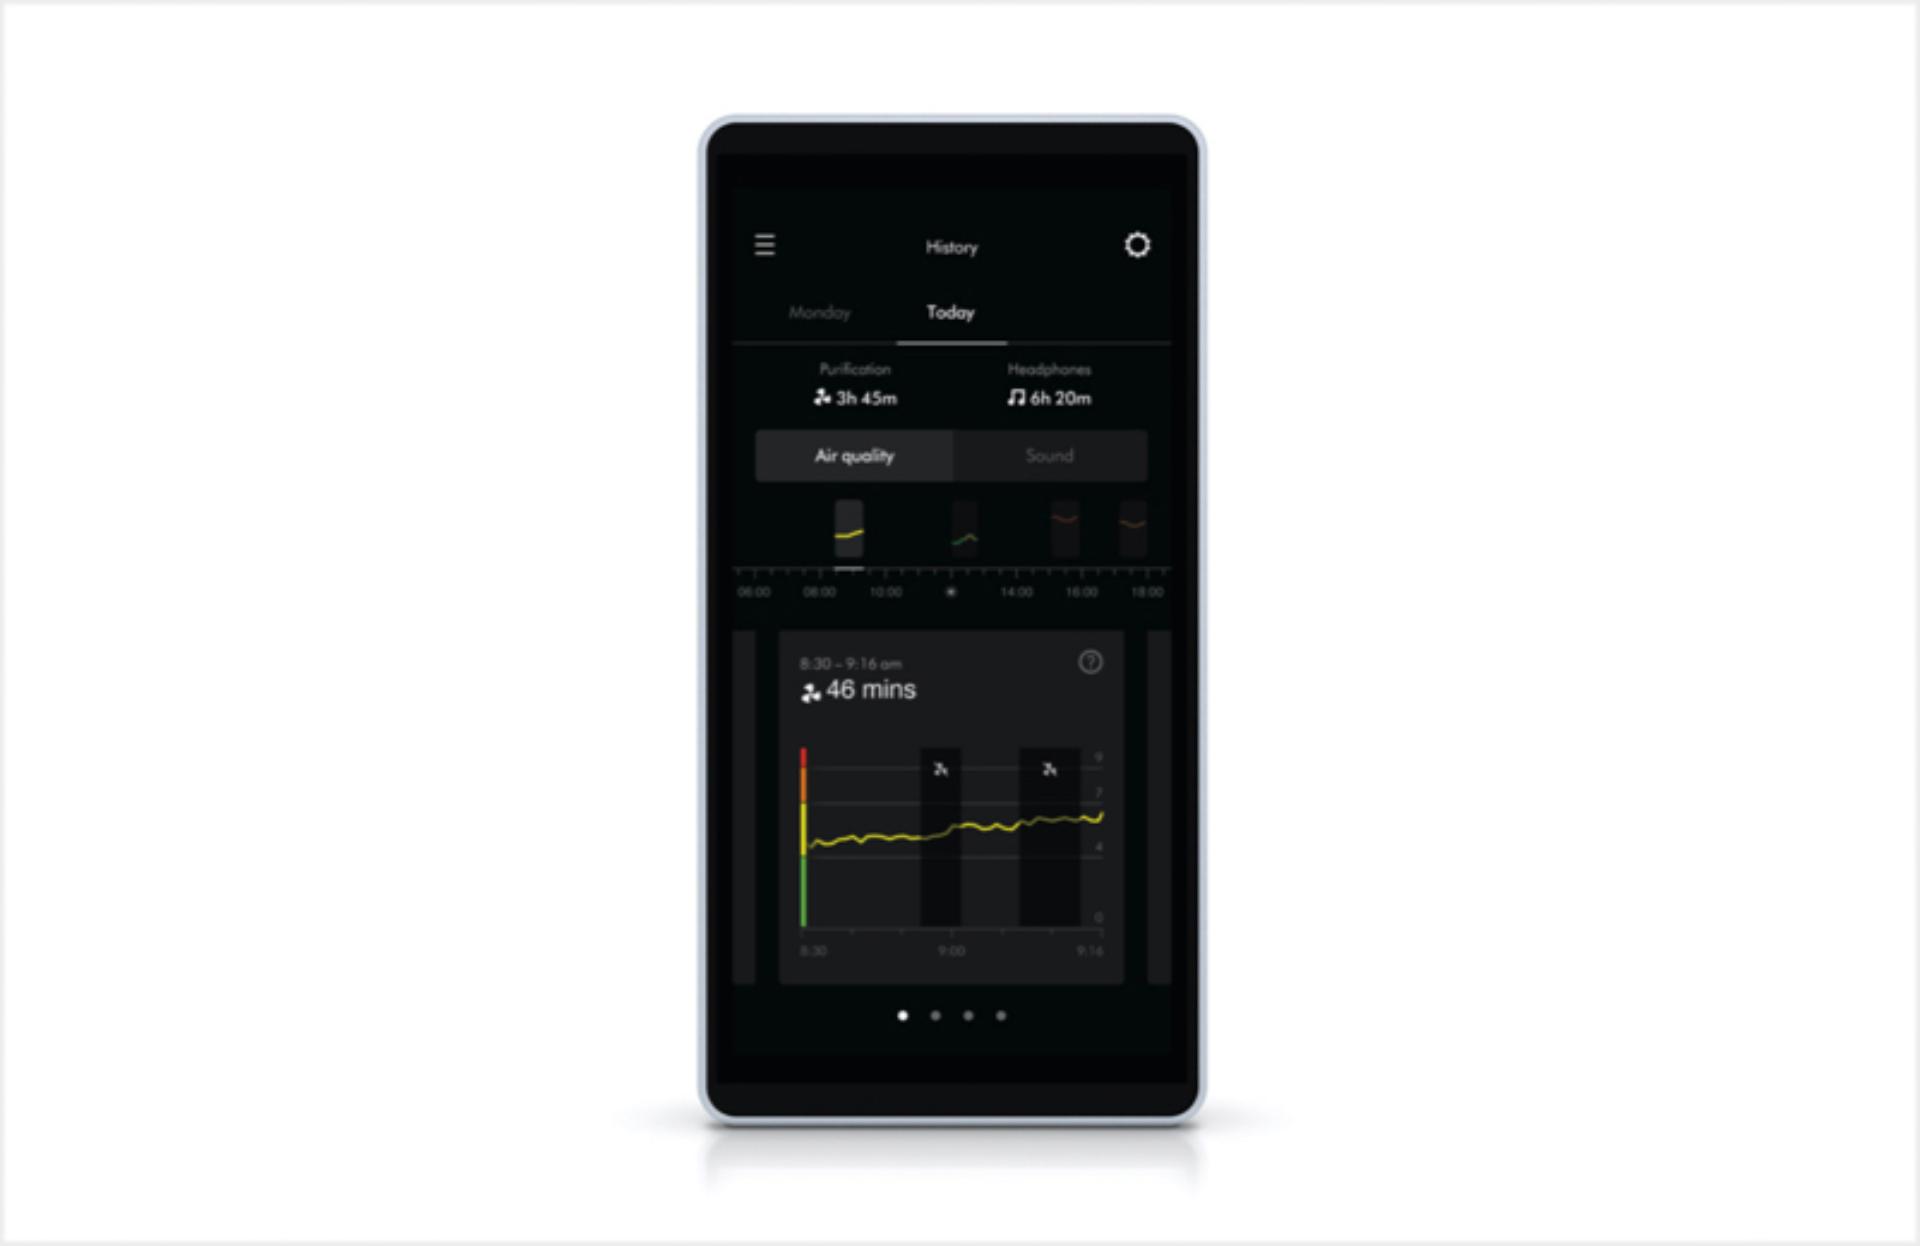 MyDyson uygulamasının hava kalitesi özelliğini gösteren akıllı telefon ekranı.